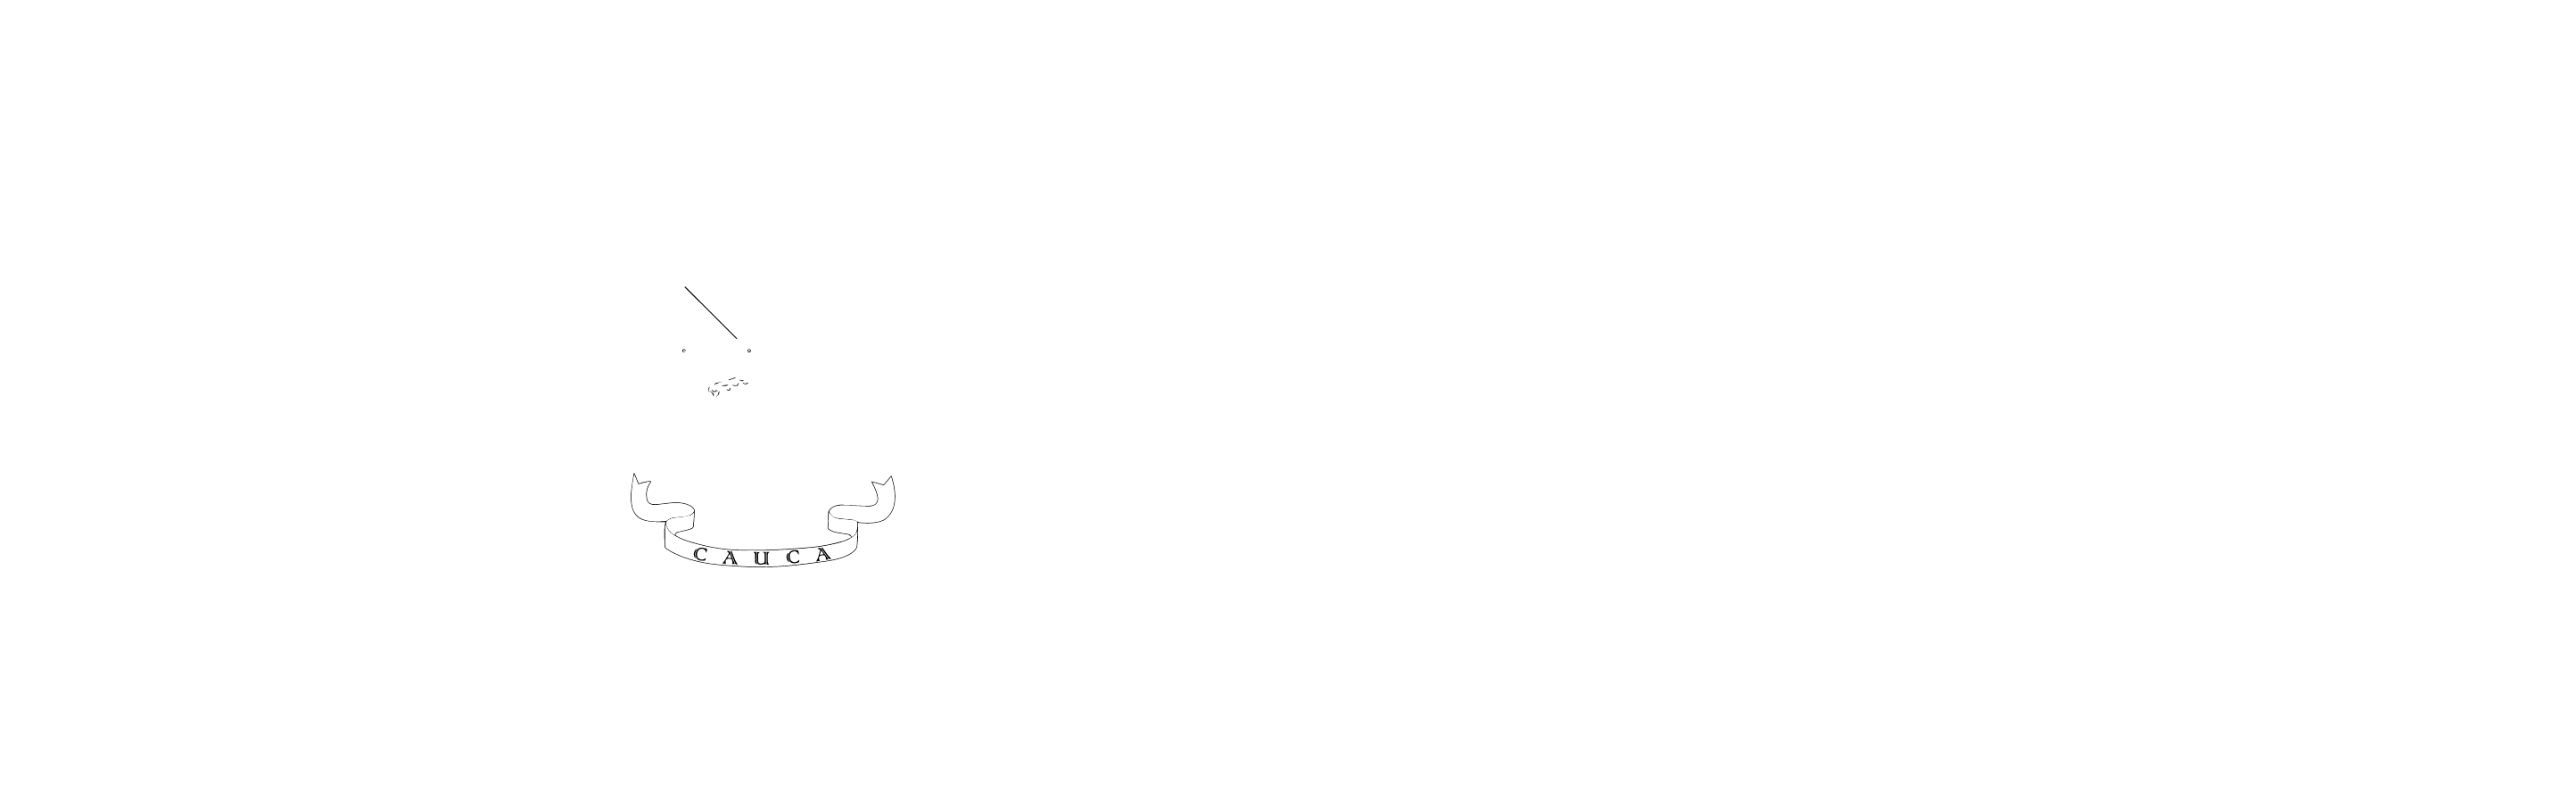 Gobernación del Cauca